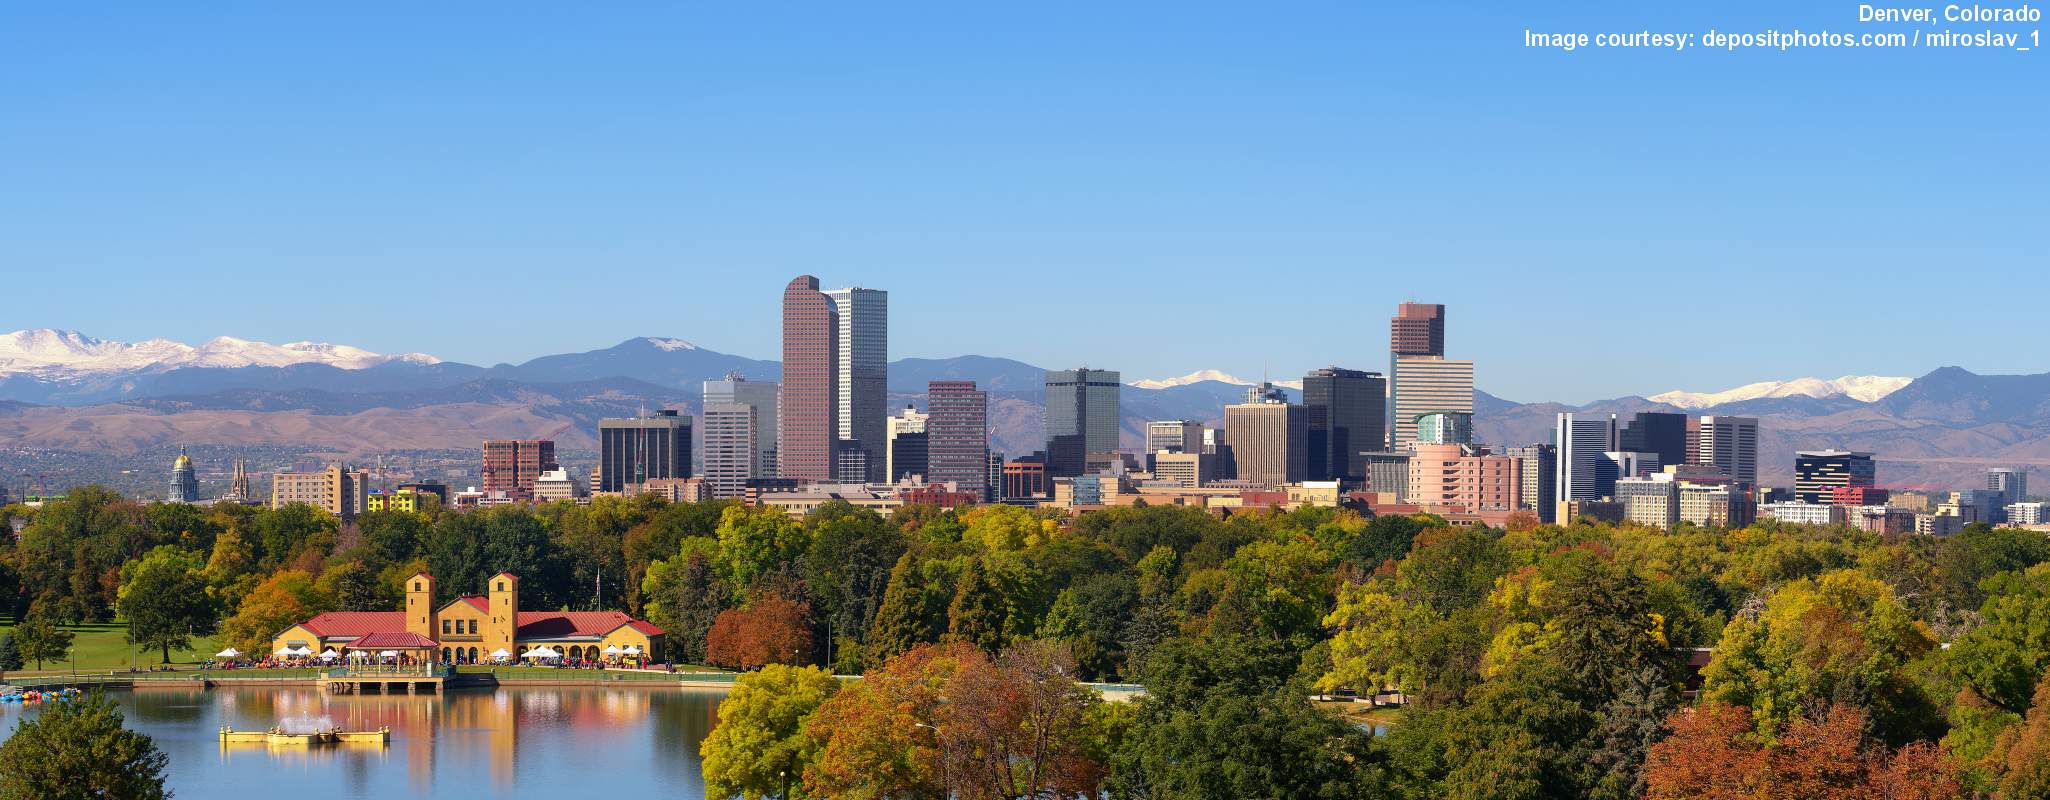 Denver image